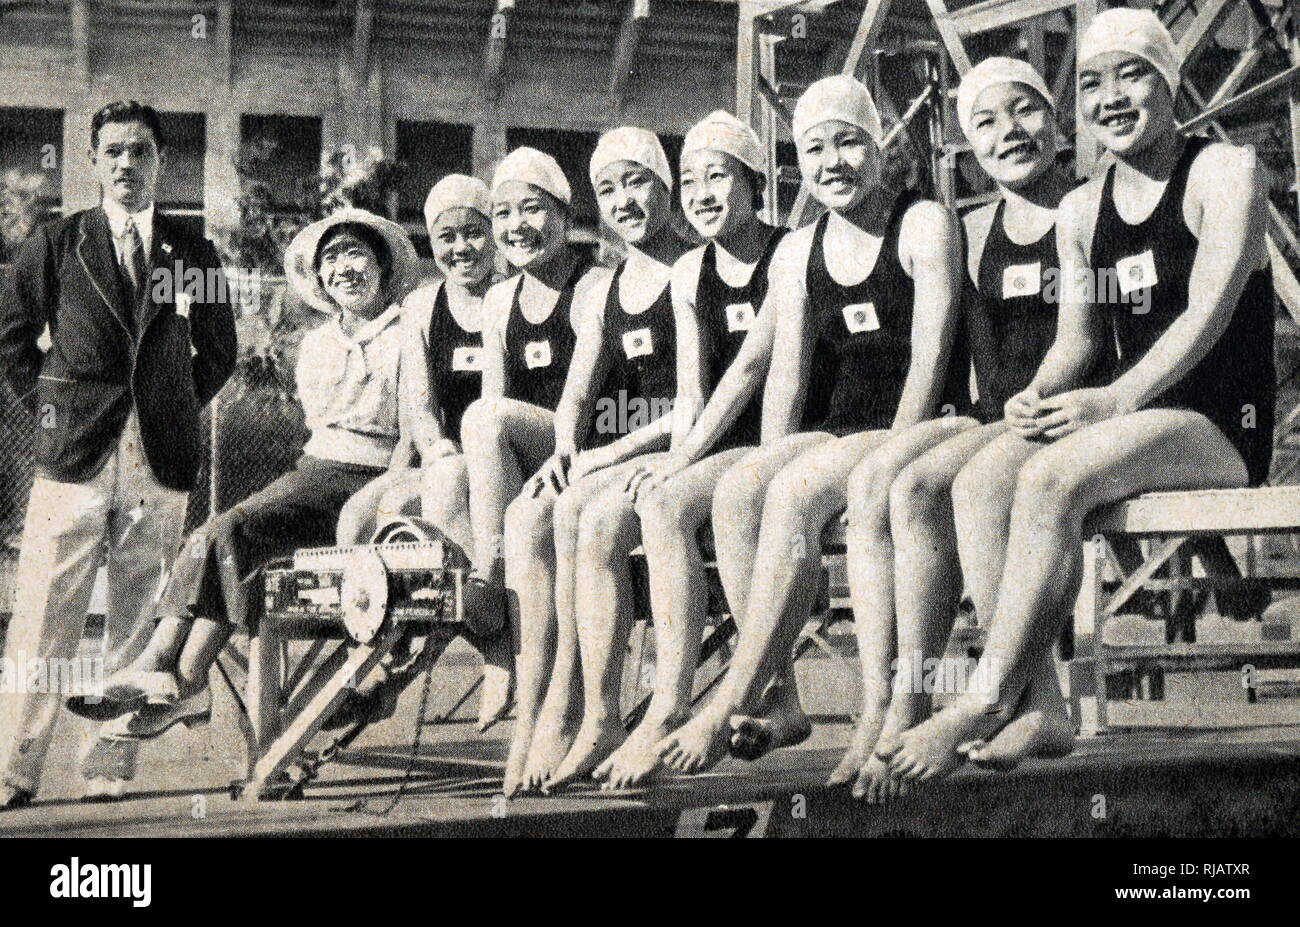 Fotografia giapponese del team di nuoto al 1932 giochi olimpici. Foto Stock